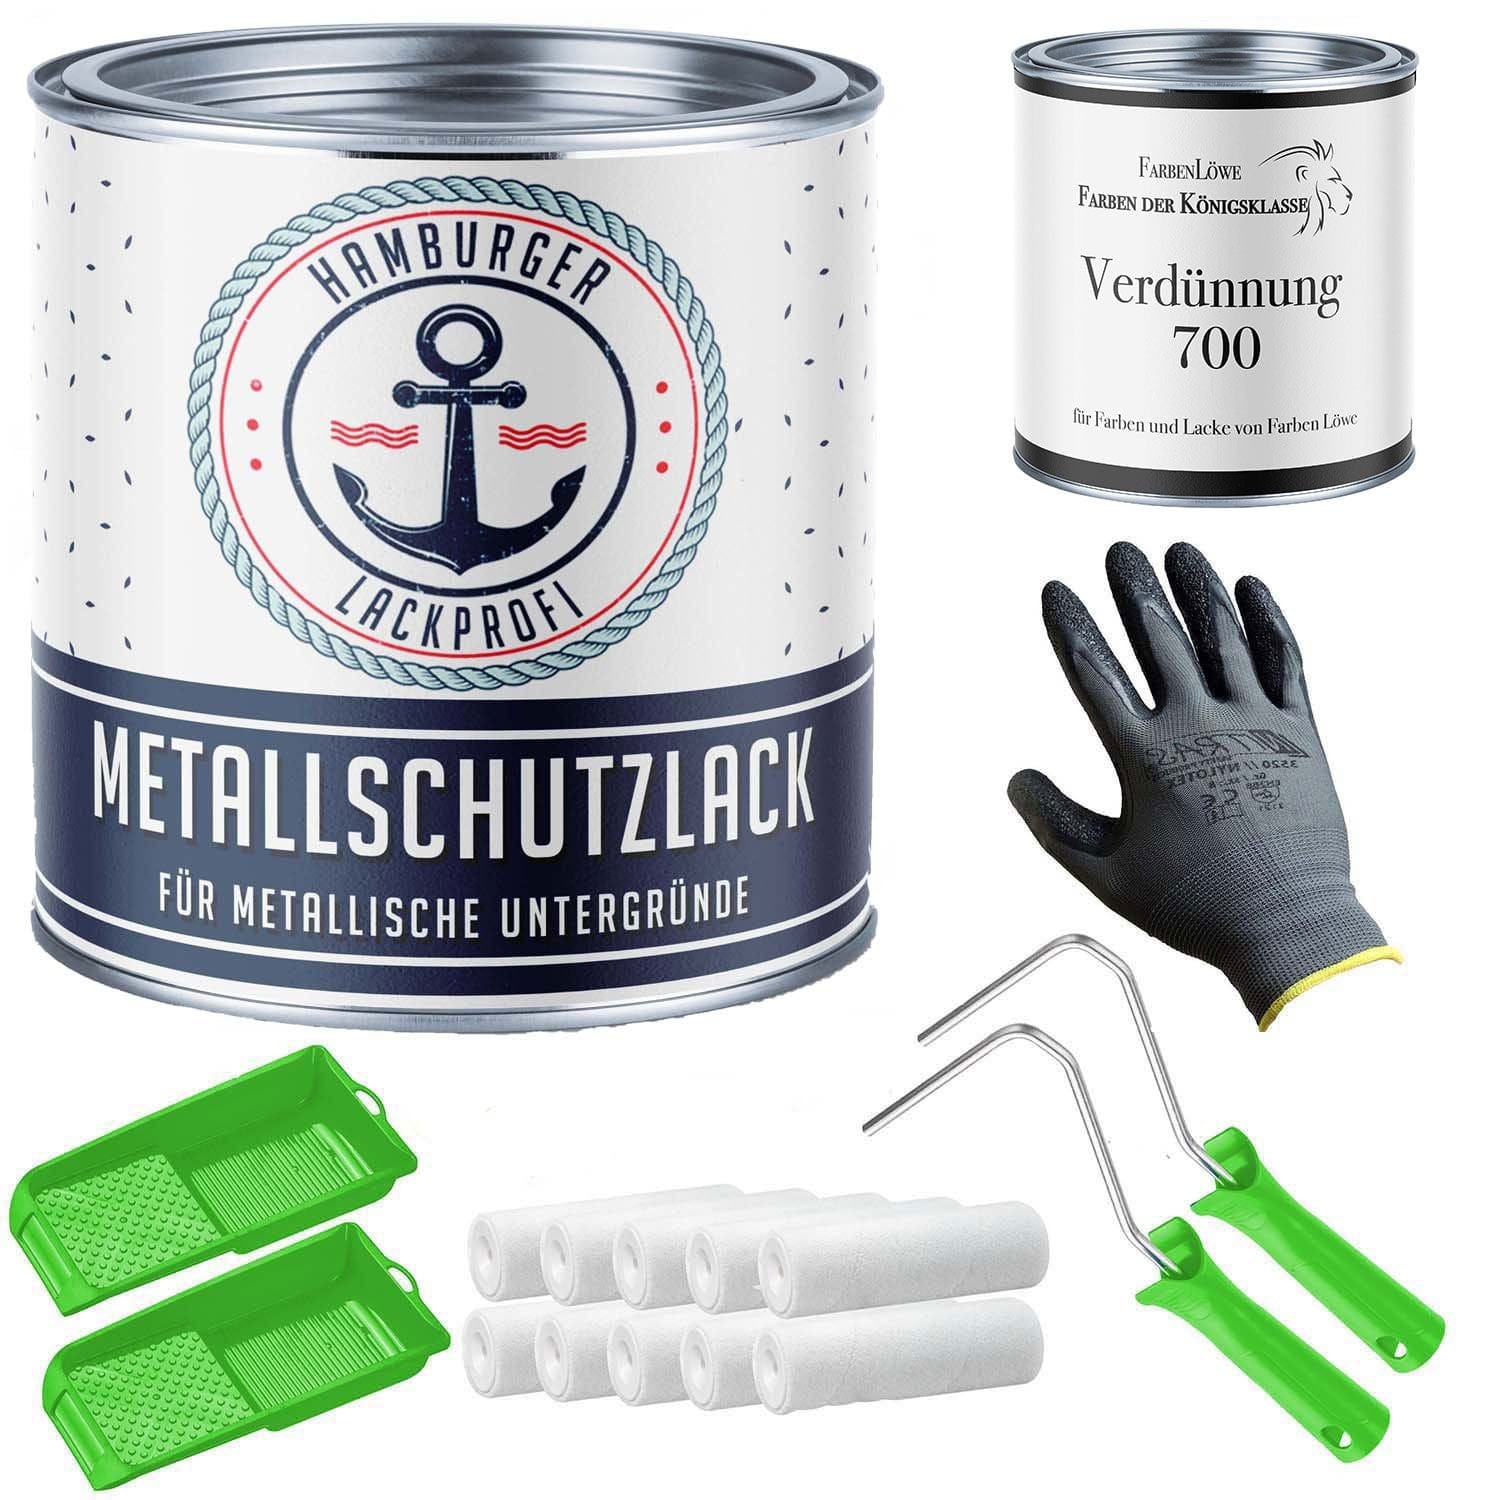 FARBENLÖWE Lacke & Beschichtungen Hamburger Lack-Profi Metallschutzlack in Pastellblau RAL 5024 mit Lackierset (X300) & Verdünnung (1 L) - 30% Sparangebot